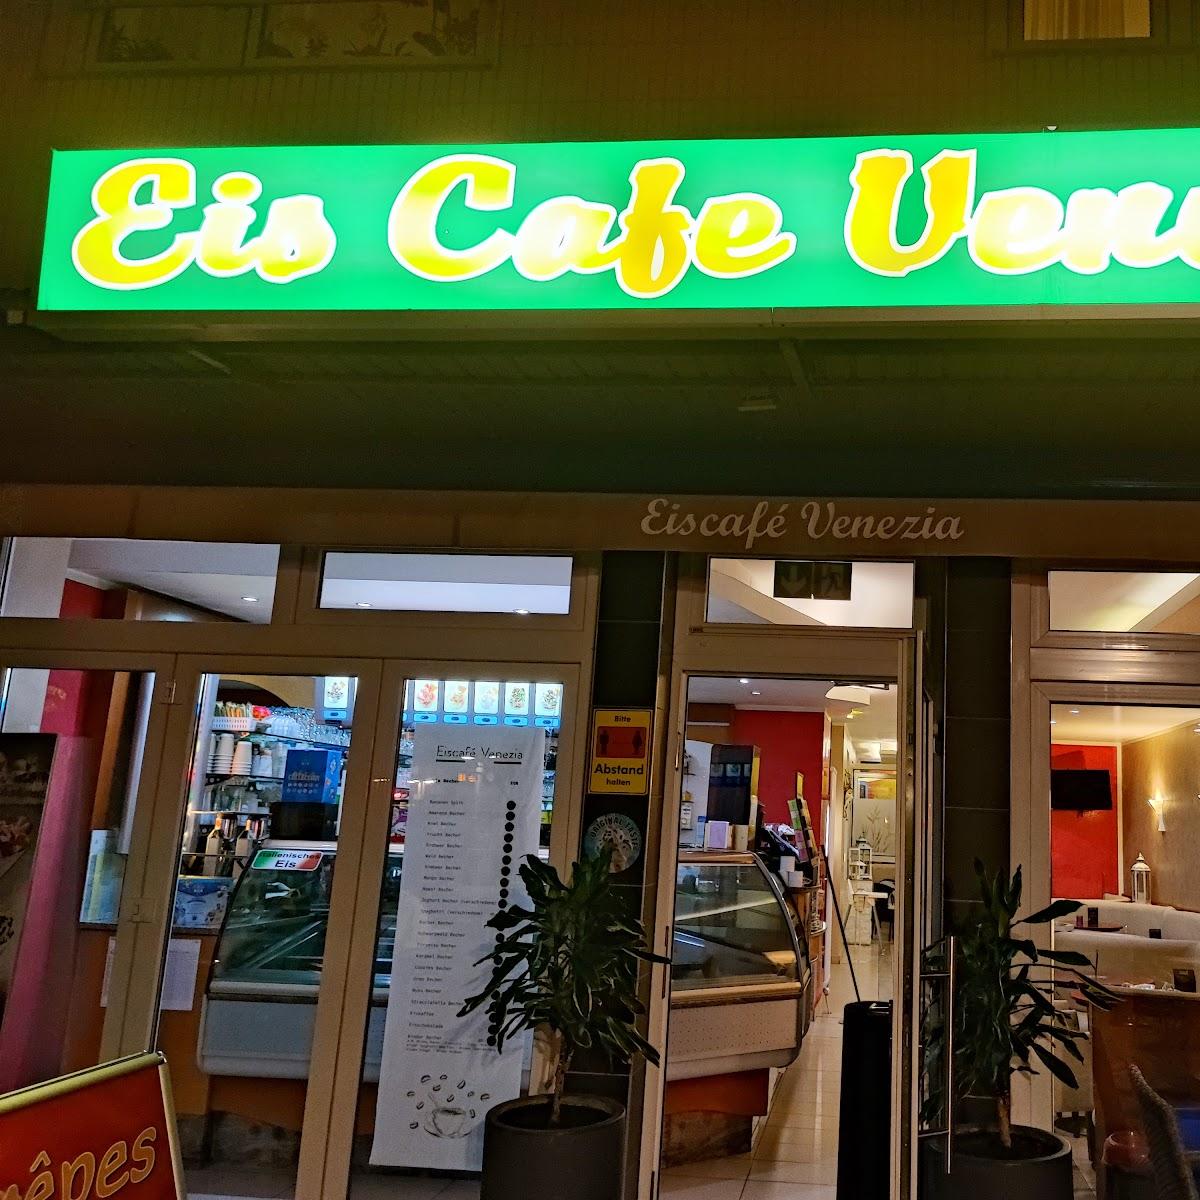 Restaurant "Eiscafé Venezia" in Ludwigshafen am Rhein